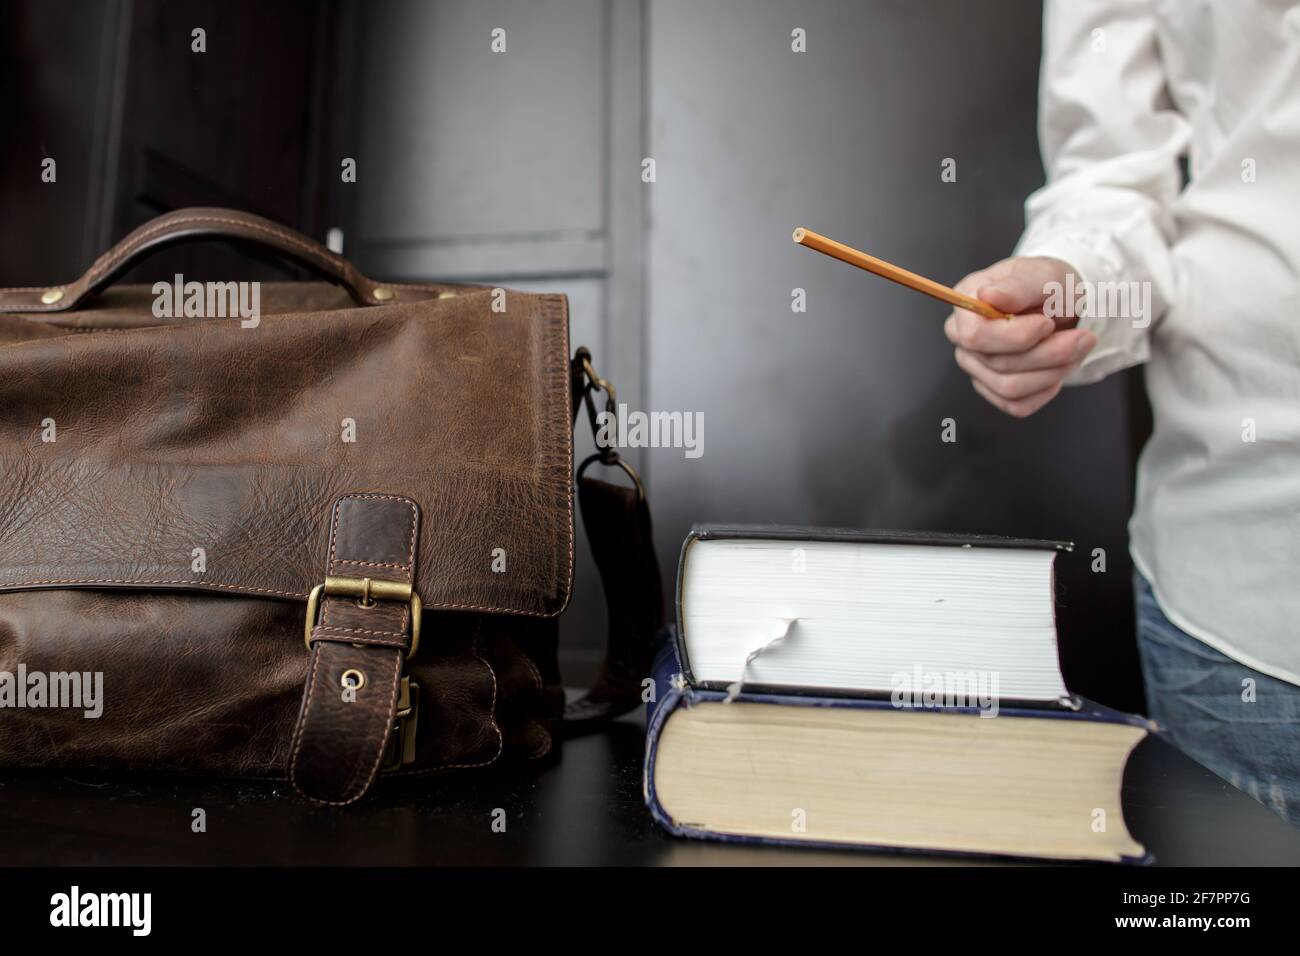 Maletín de marrón y una pila de libros en el escritorio del profesor, que está de pie y explicando algo Fotografía de stock Alamy